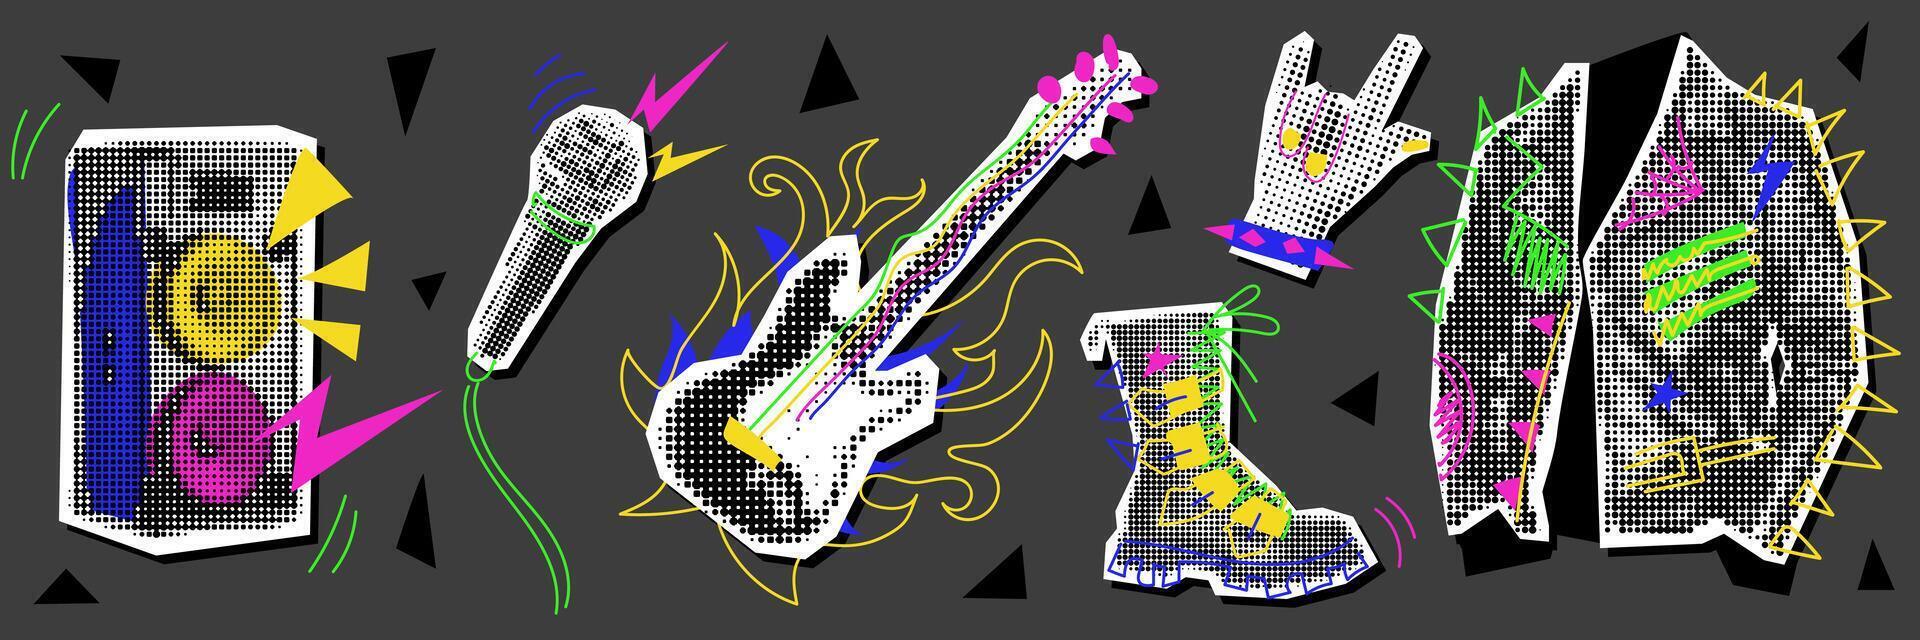 ein einstellen von Rocker Objekte Collage im das Stil von Grunge Pop Kunst. Jacke, Gitarre, Mikrofon, Hand, Schuh, Lautsprecher. schwarz und Weiß Punkte mit farbig Einsätze. es sieht aus mögen ein Ausschnitt von ein Zeitschrift vektor